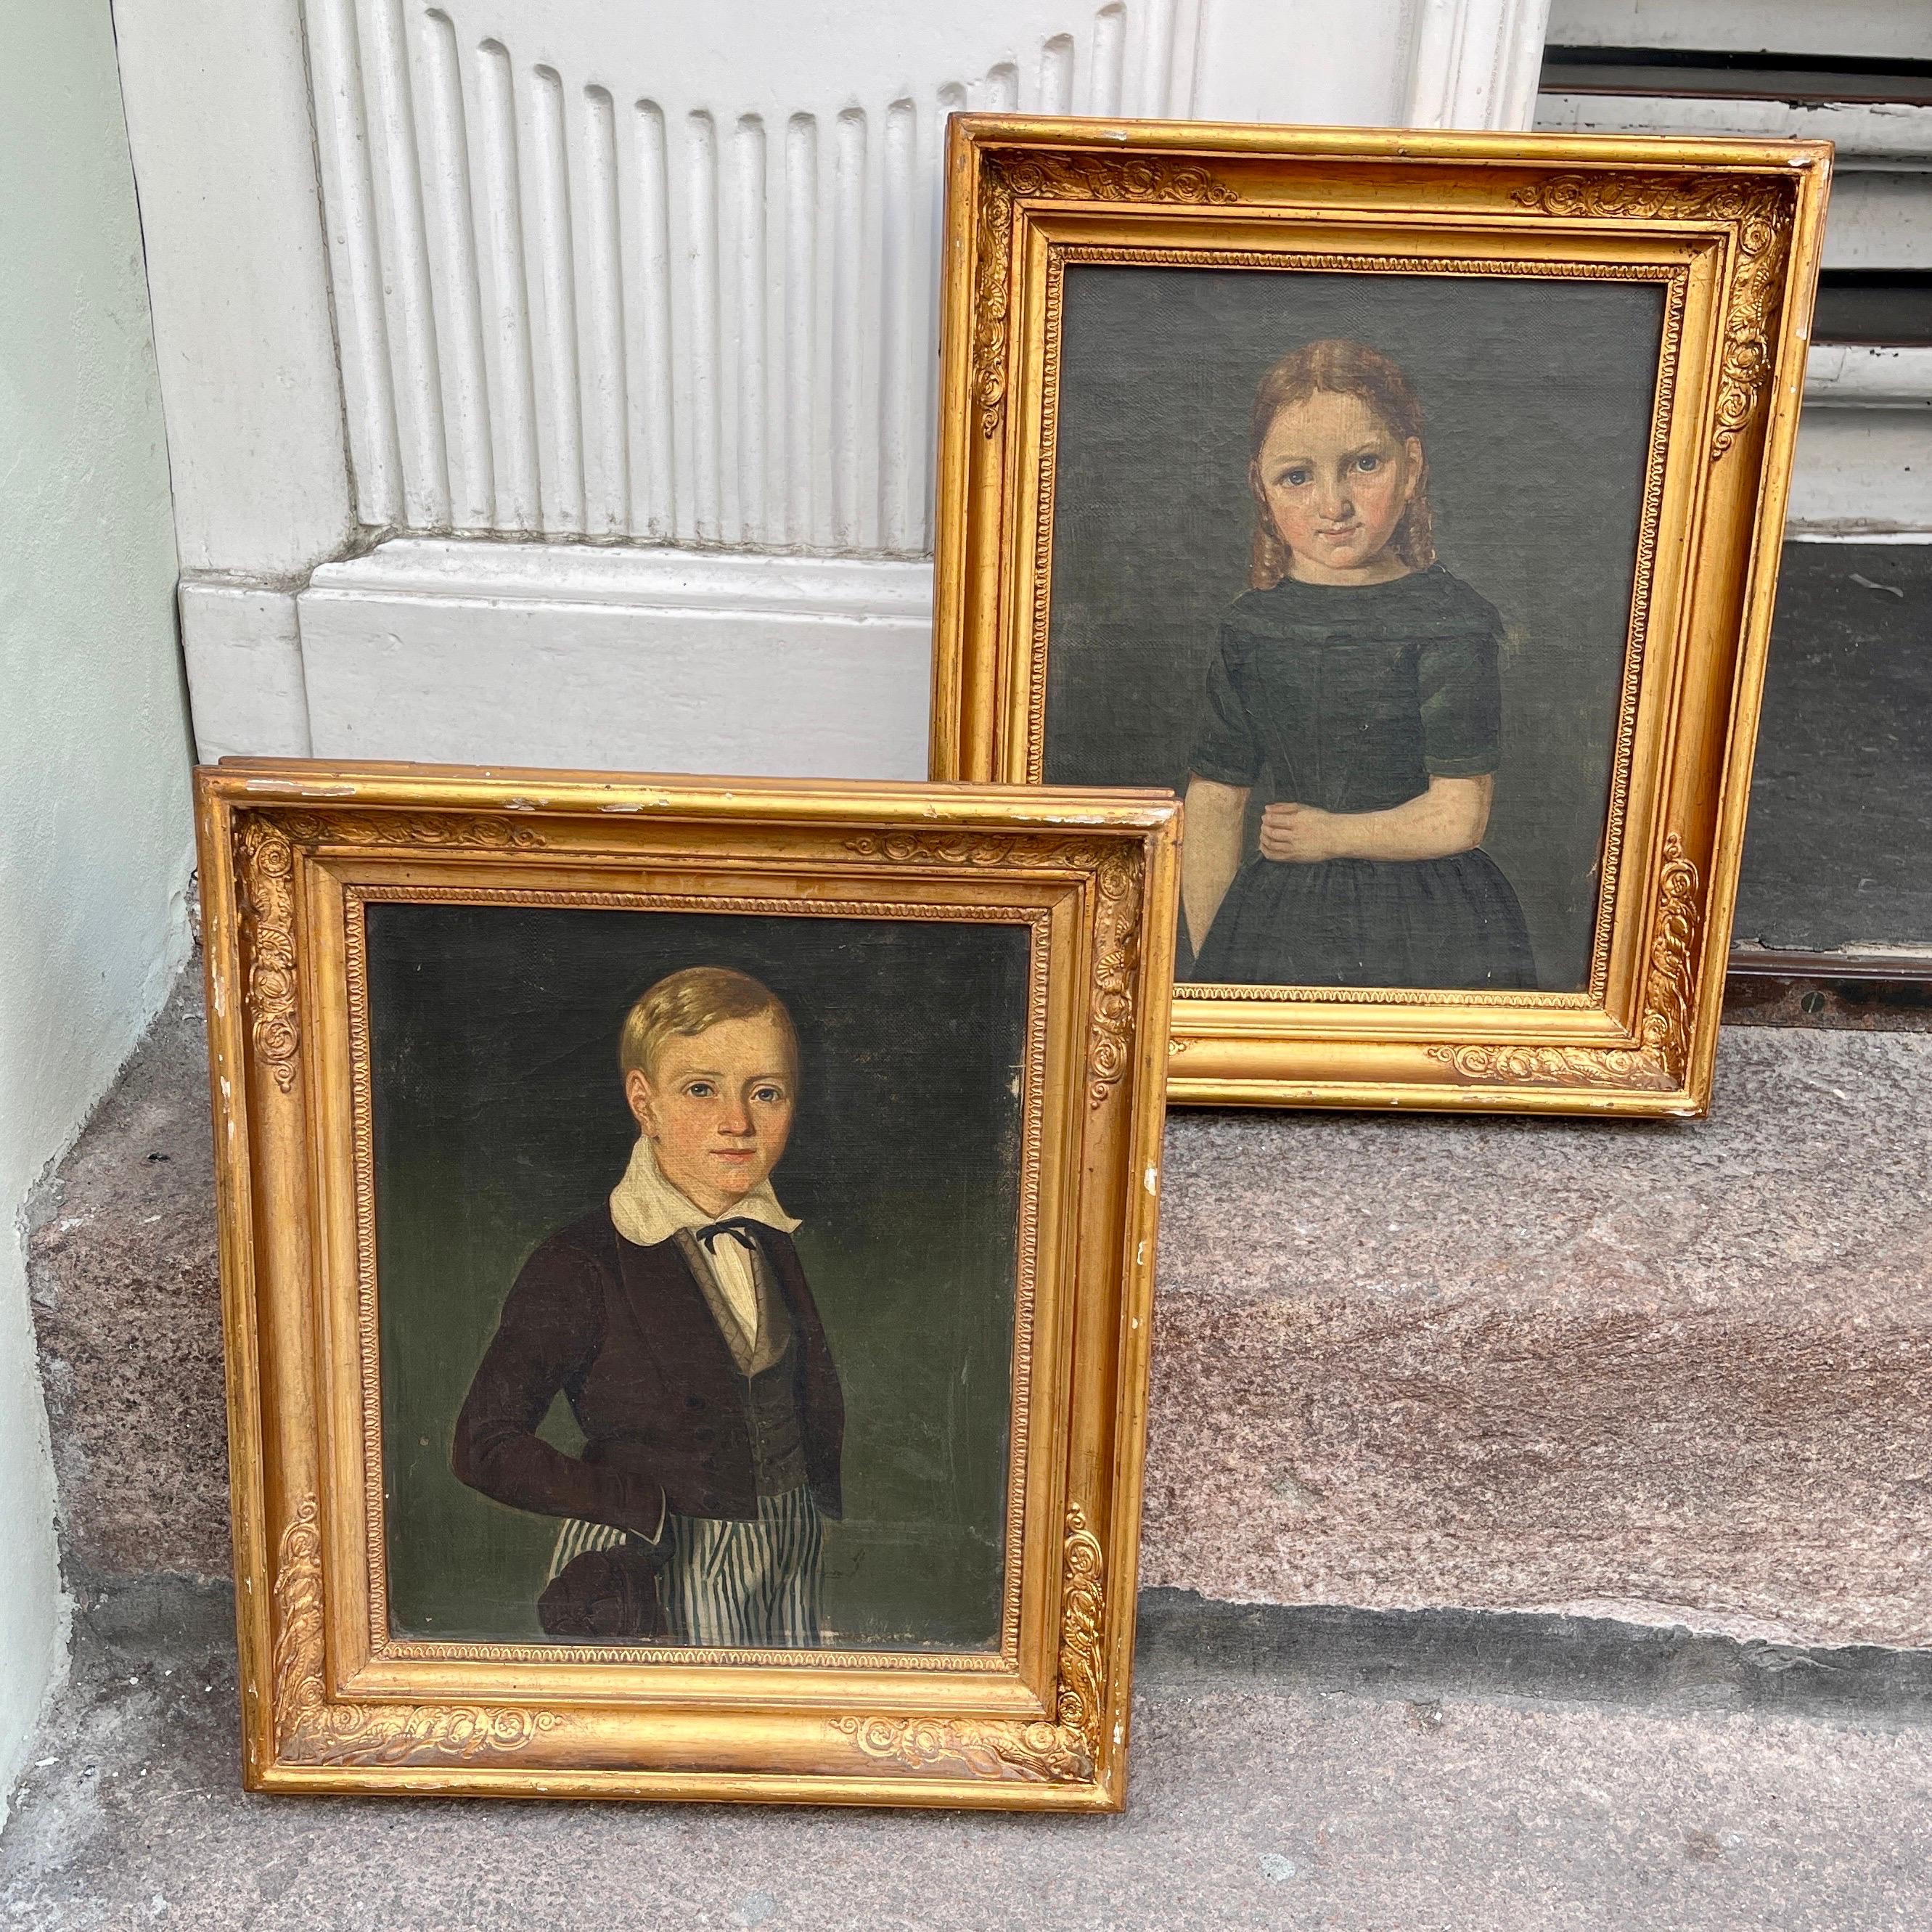 Paire de portraits d'enfants à l'huile sur toile du début du 19e siècle

Charmante paire de peintures danoises du début du 19e siècle, huile sur toile. Ces portraits d'enfants ont été placés dans des cadres en bois sculpté et doré. Ces ravissantes